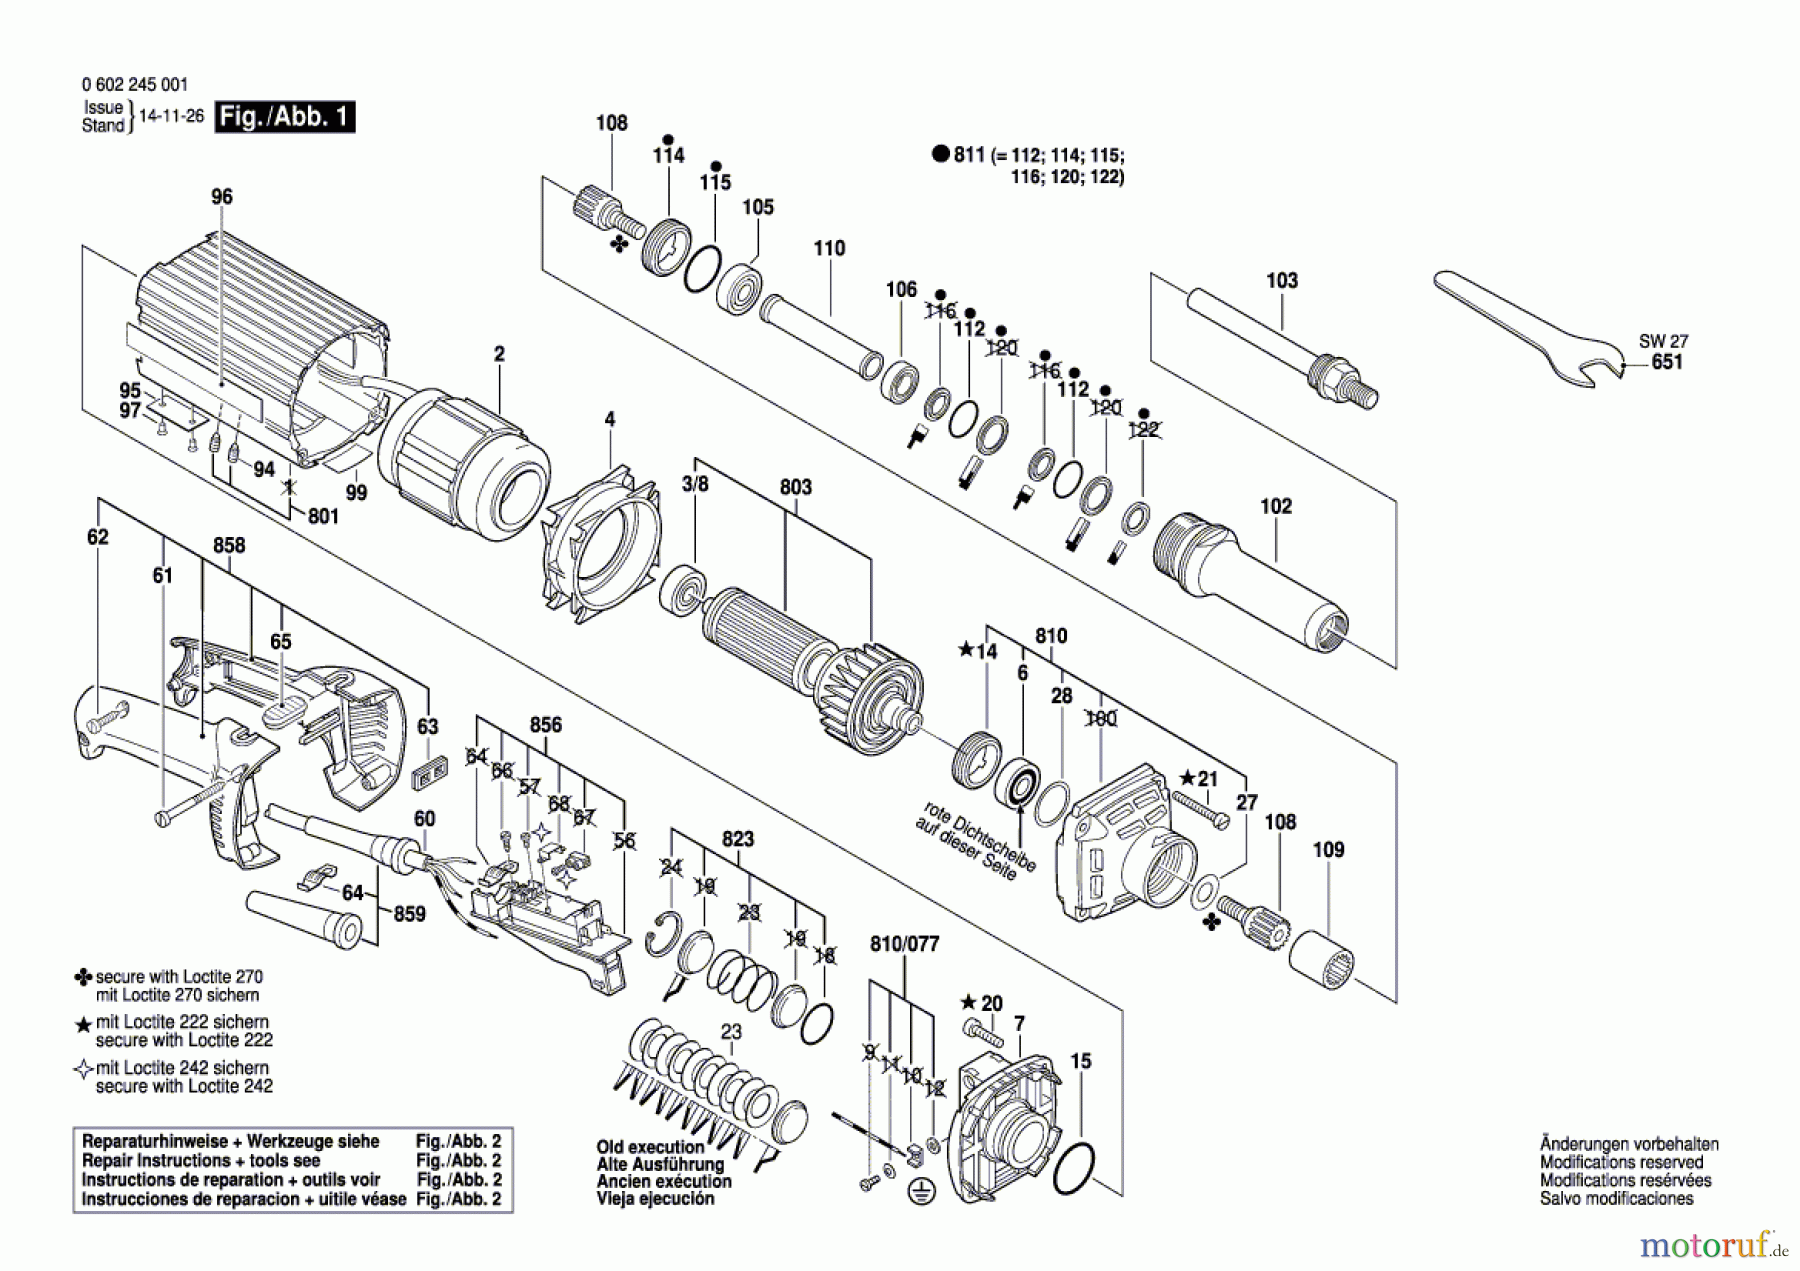  Bosch Werkzeug Hf-Geradschleifer GERADSCHLEIFER ---- Seite 1